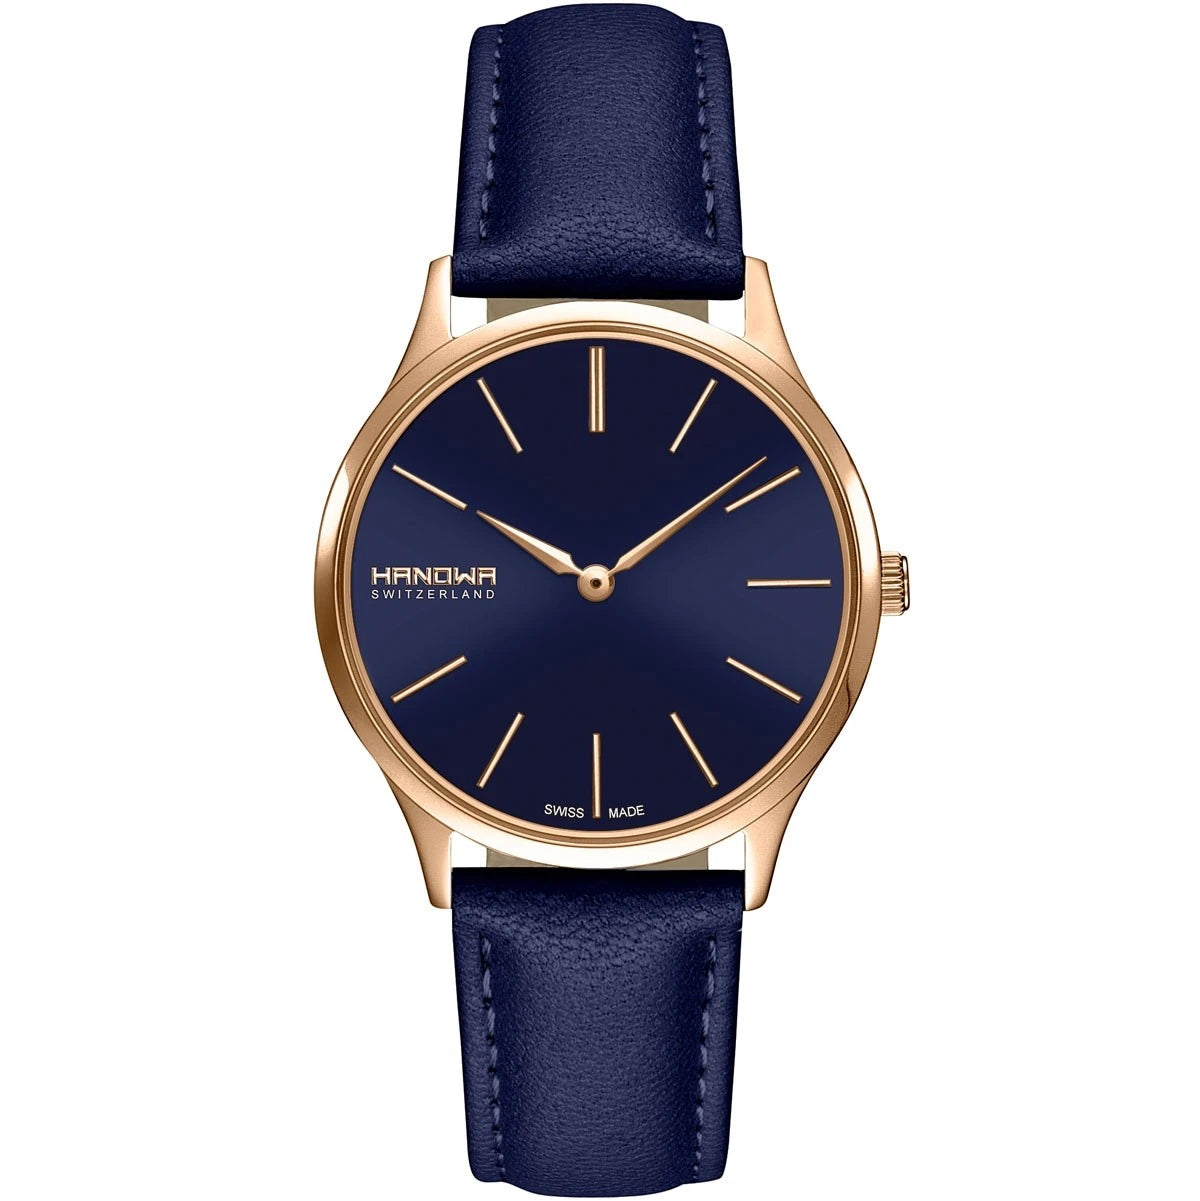 Hanowa Pure Damenuhr - Geschenk für Damen - Blau Uhr - Damenuhr Güngstig Preis - Edelstahl, blaufarben analog uhren für damen